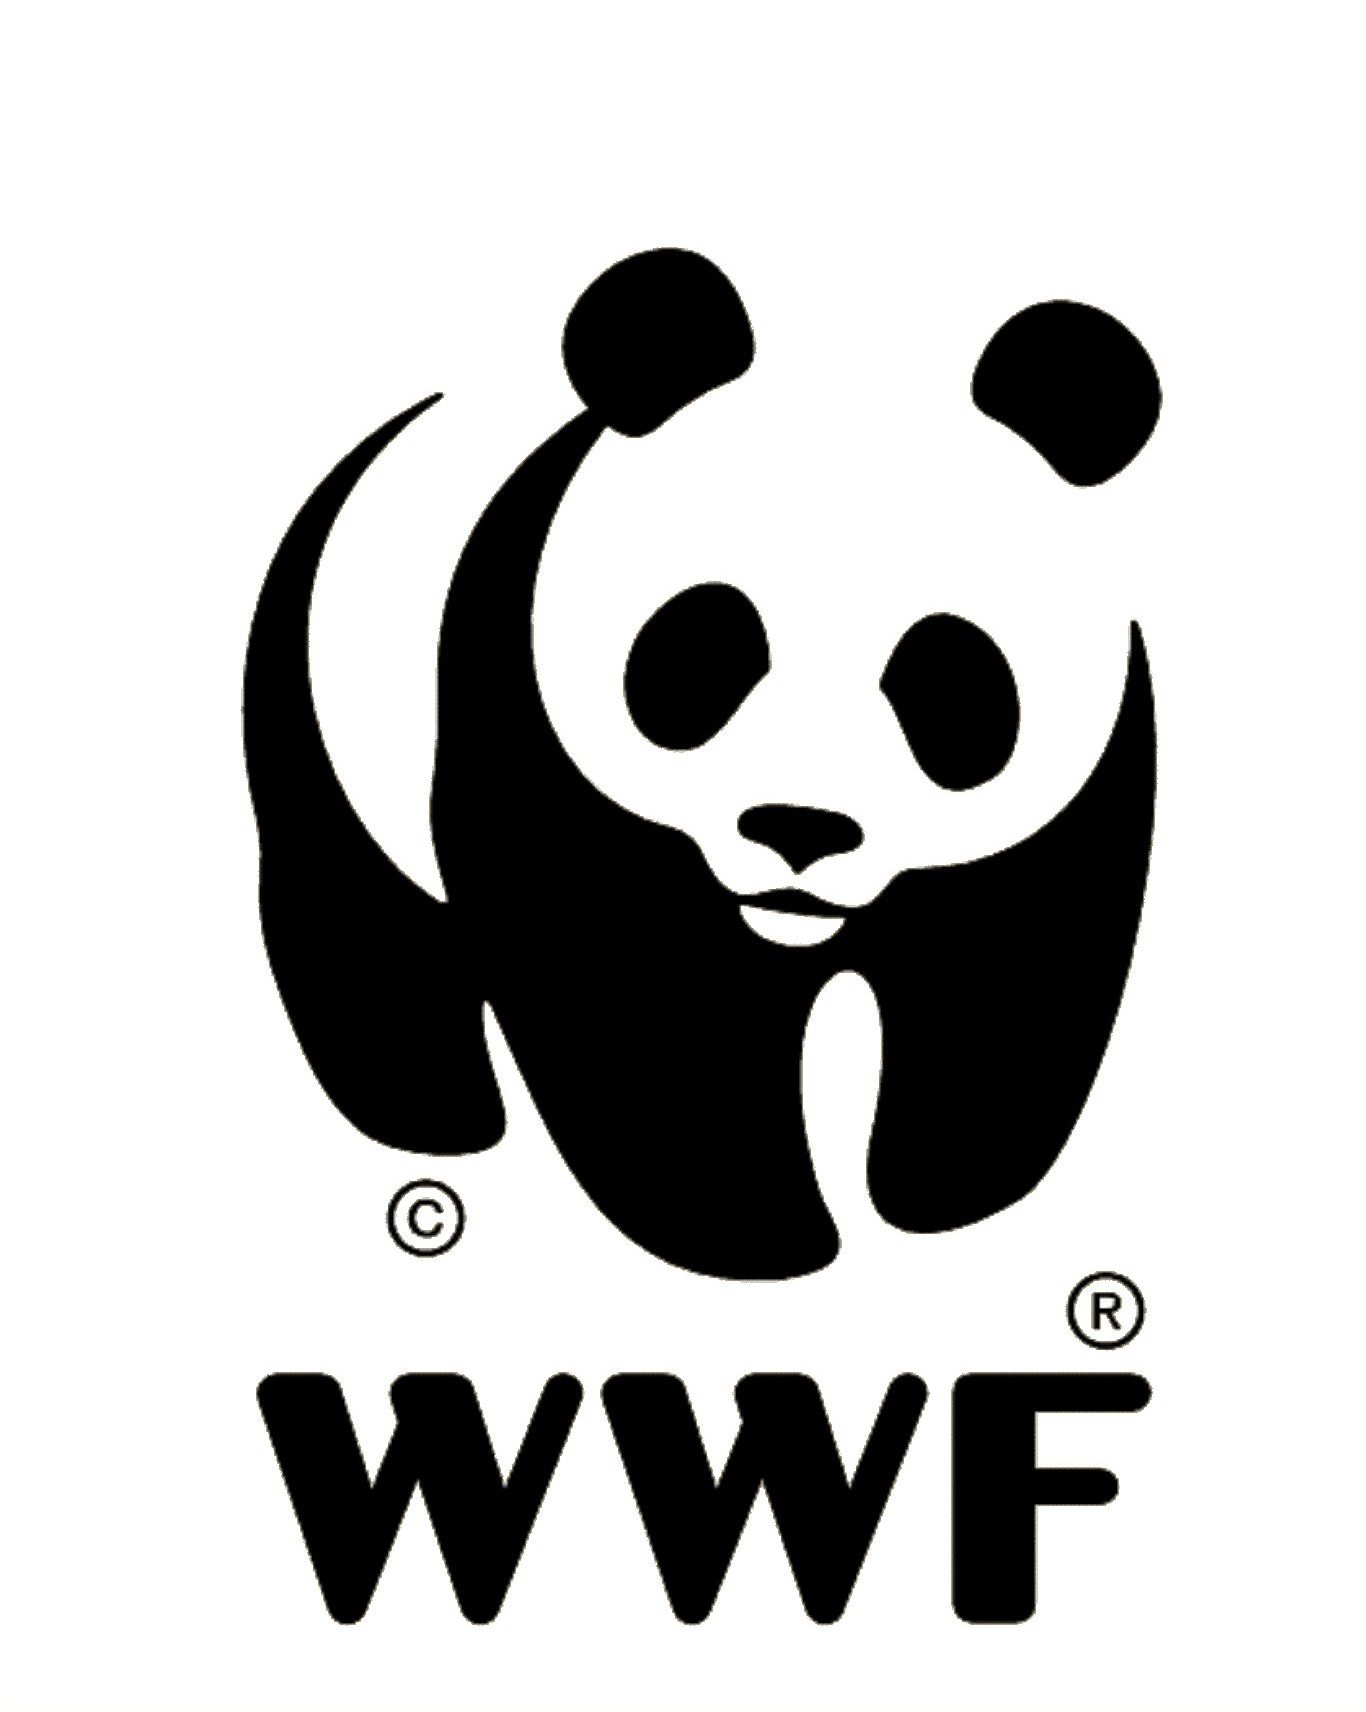 WWF logo e1556716521922